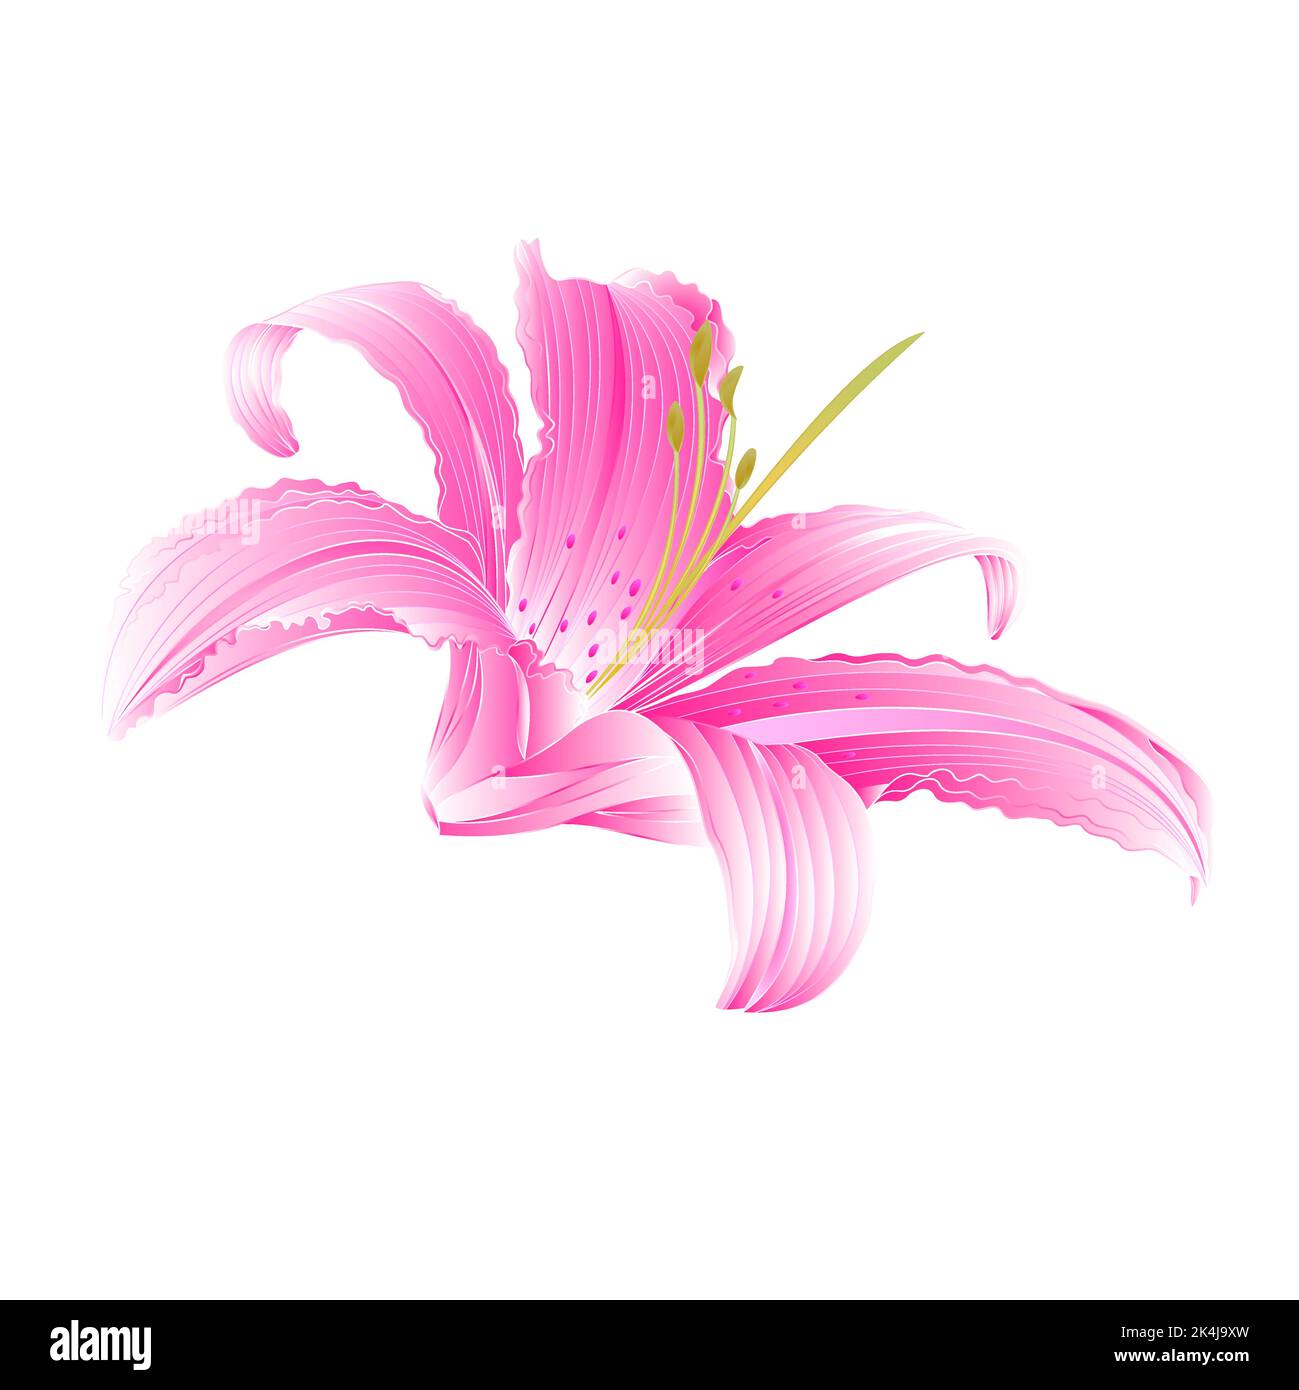 Fleur de printemps rose Lily illustration de vecteur Daylyly Illustration de Vecteur